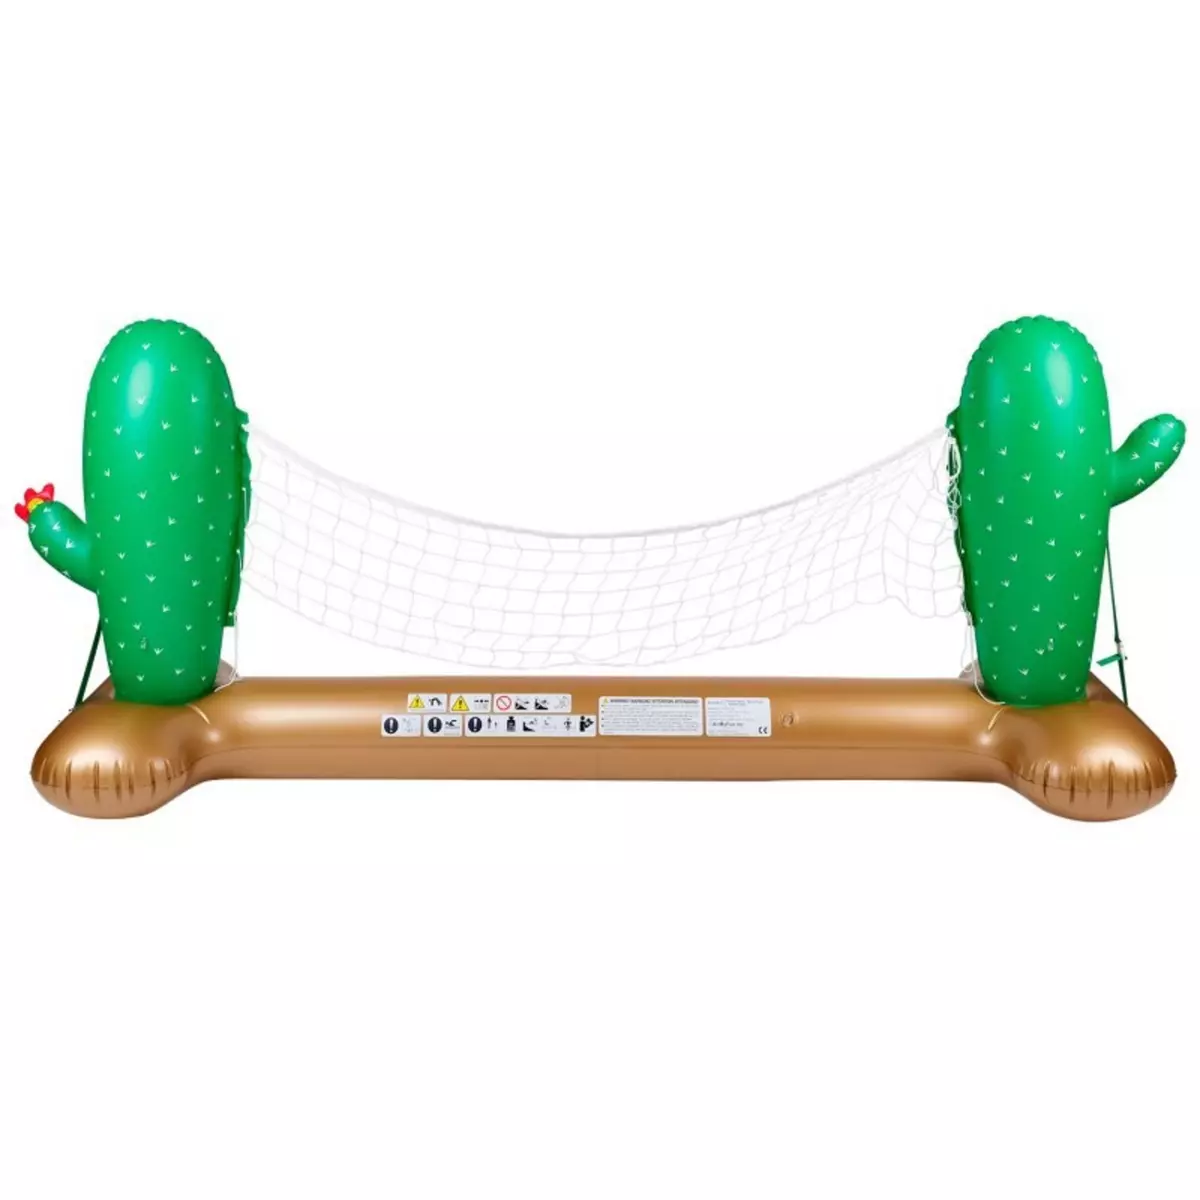 AIRMYFUN Filet de Volley Gonflable et Flottant pour Piscine & Plage, 274 x 165 x 37 cm - Design Cactus